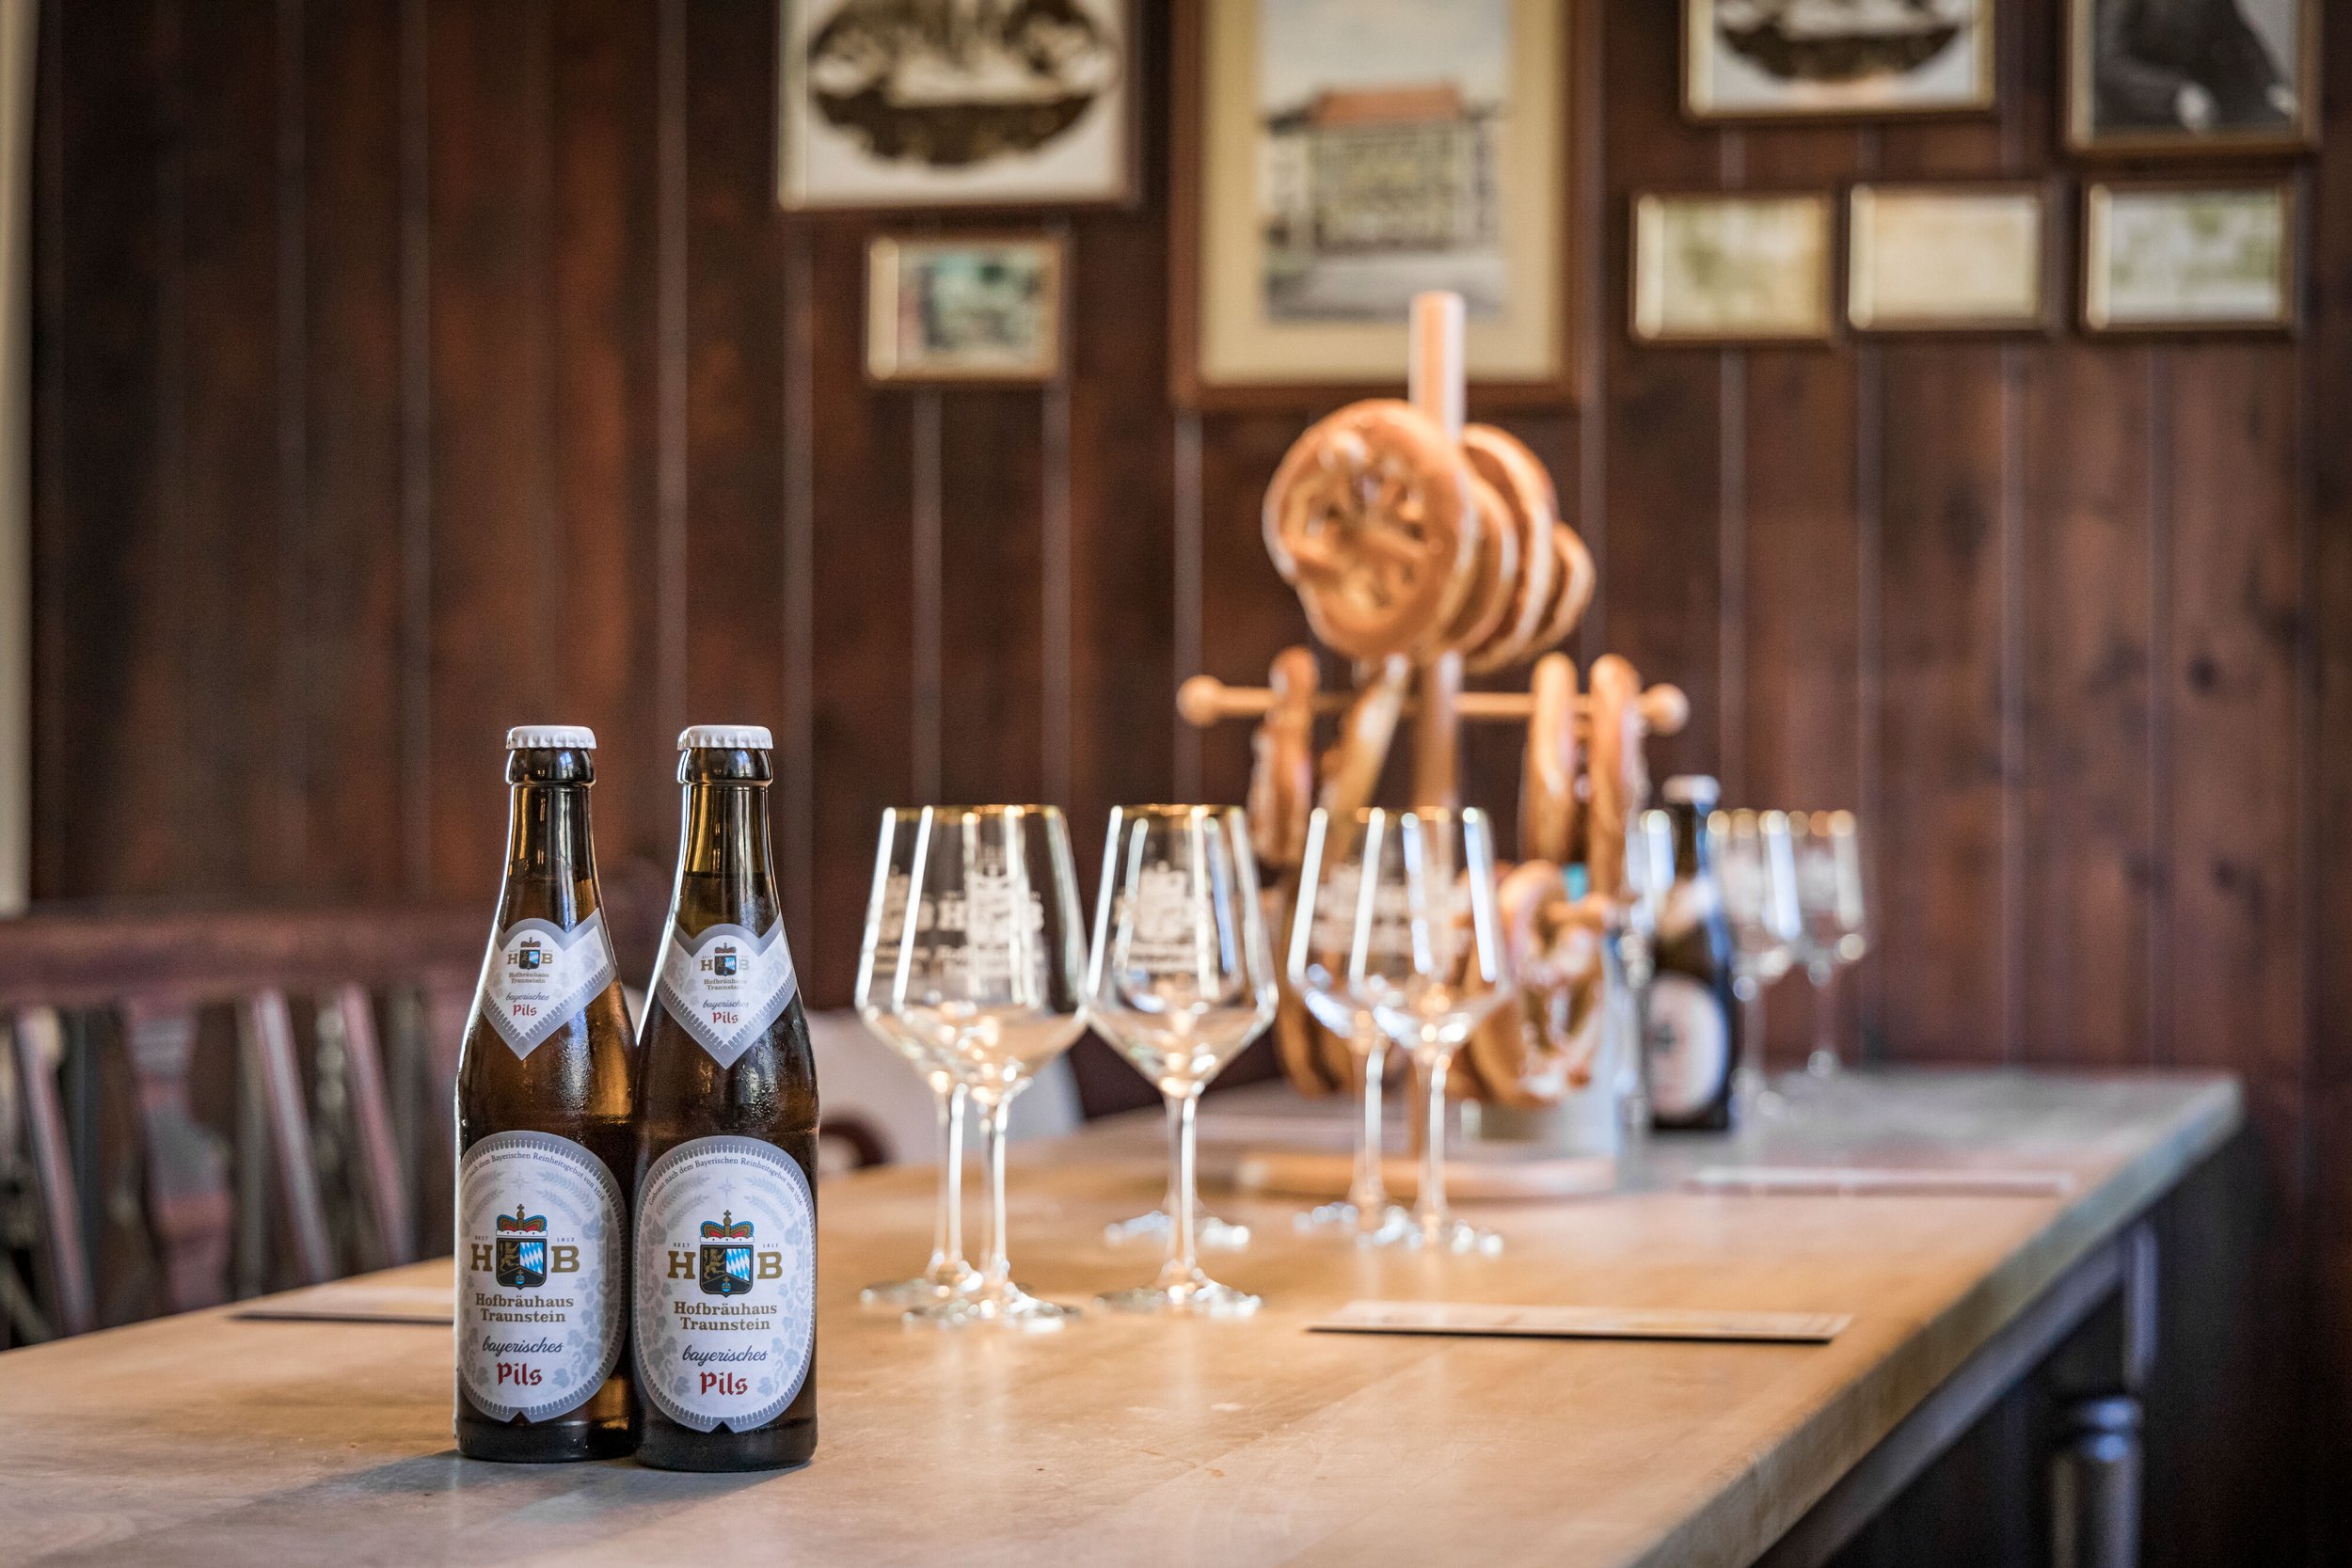 Zwei Flaschen Bayerisches Pils vom Hofbräuhaus Traunstein auf dem Tisch, vor Gläsern und Laugenbrezen